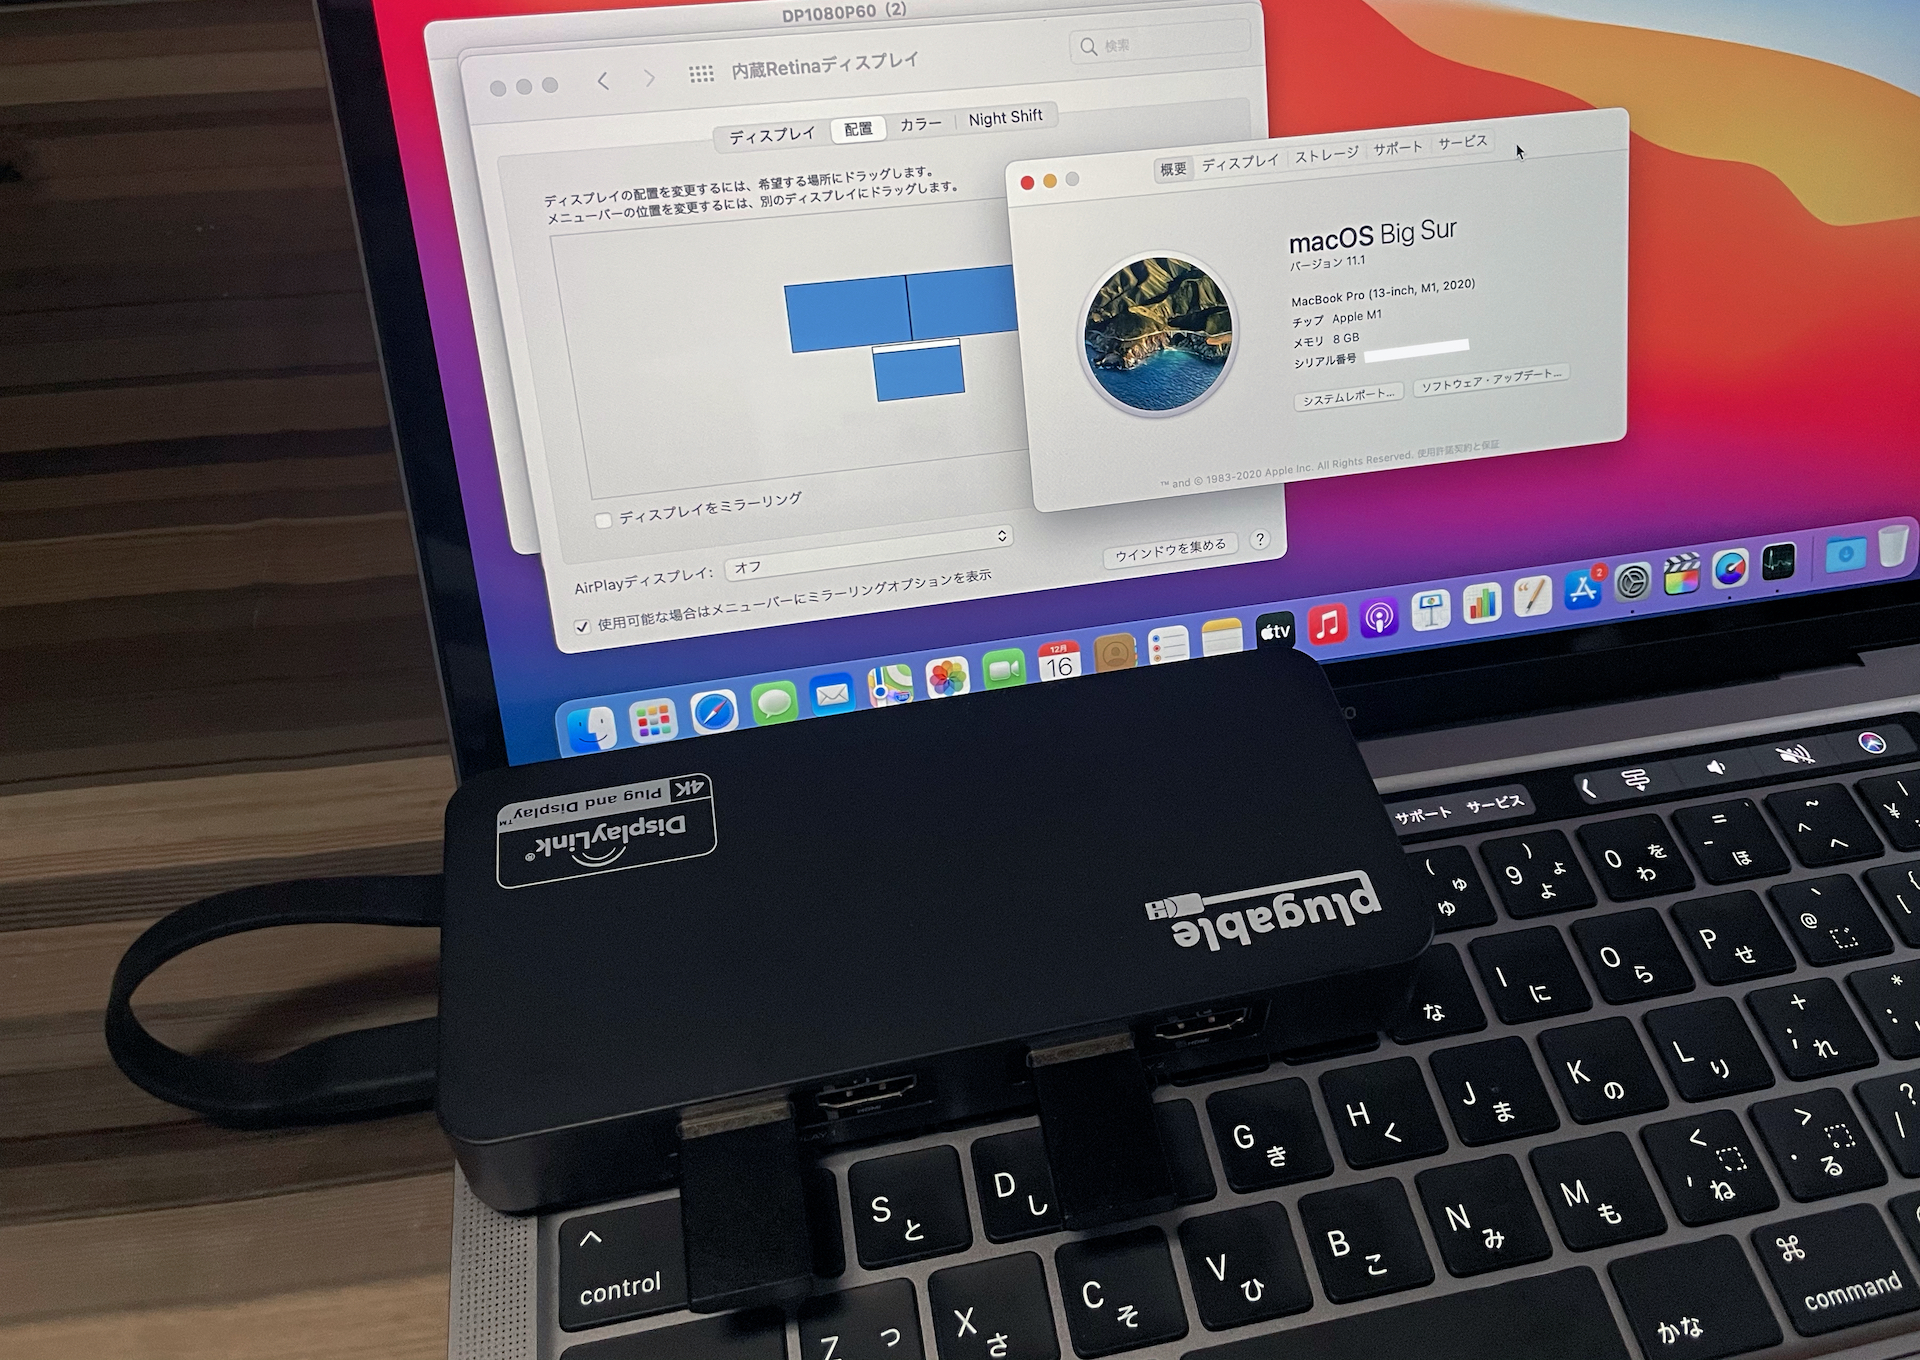 Apple M1チップ搭載のMacBook Pro (M1, 13-inch, 2020)とPlugable USBC-6950UE